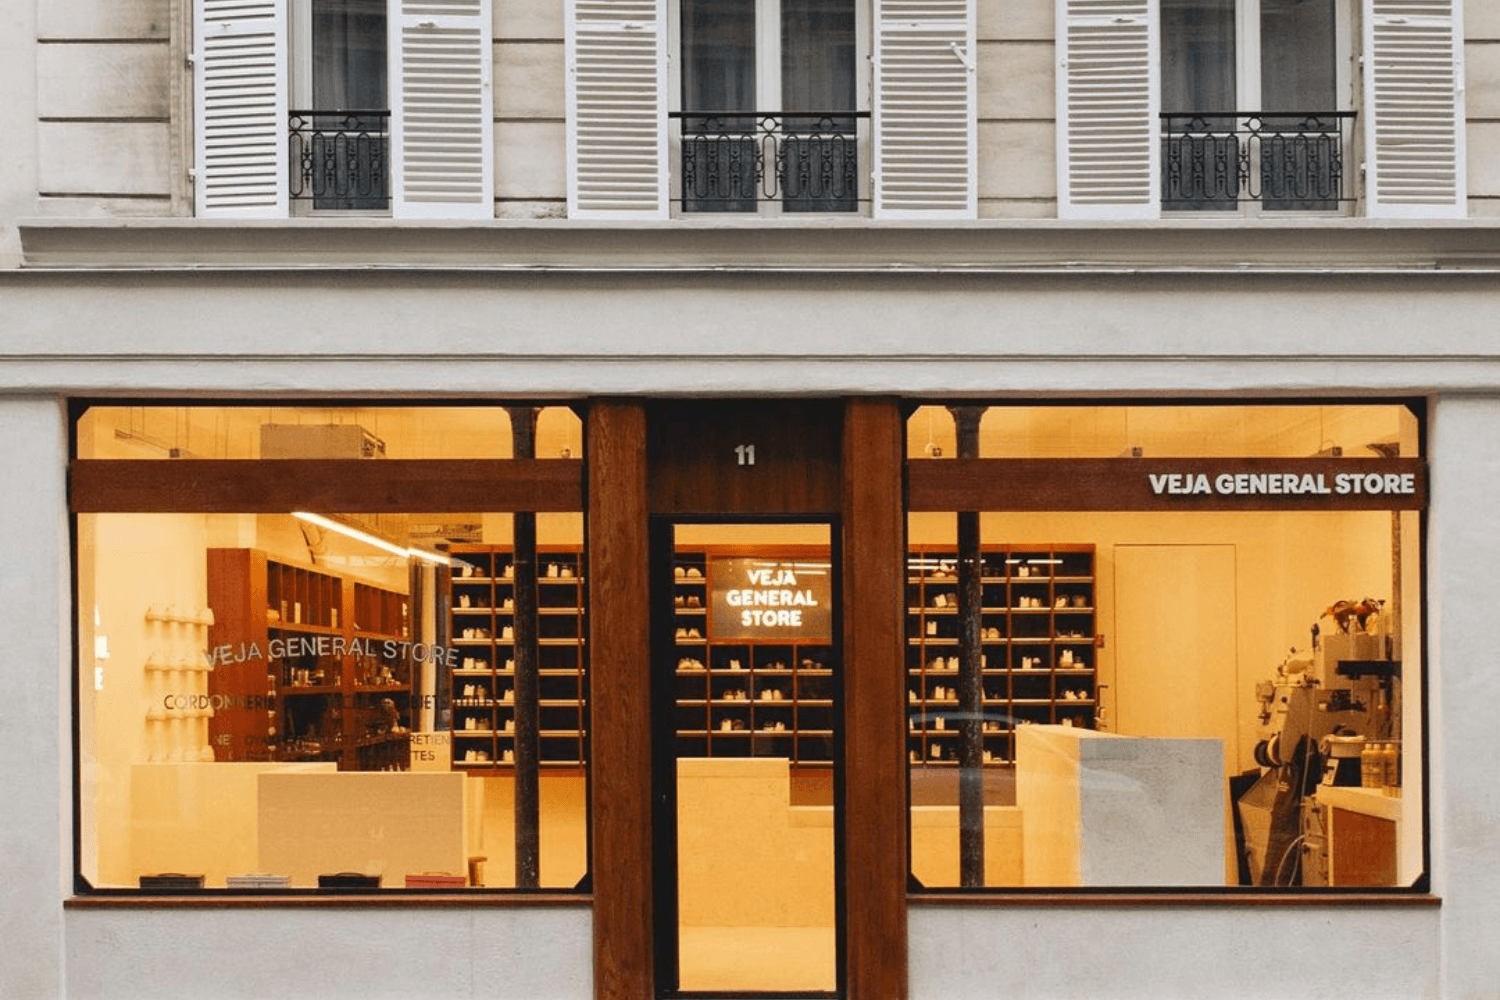 VEJA eröffnet General Store in Paris der auch Reparaturservice anbietet